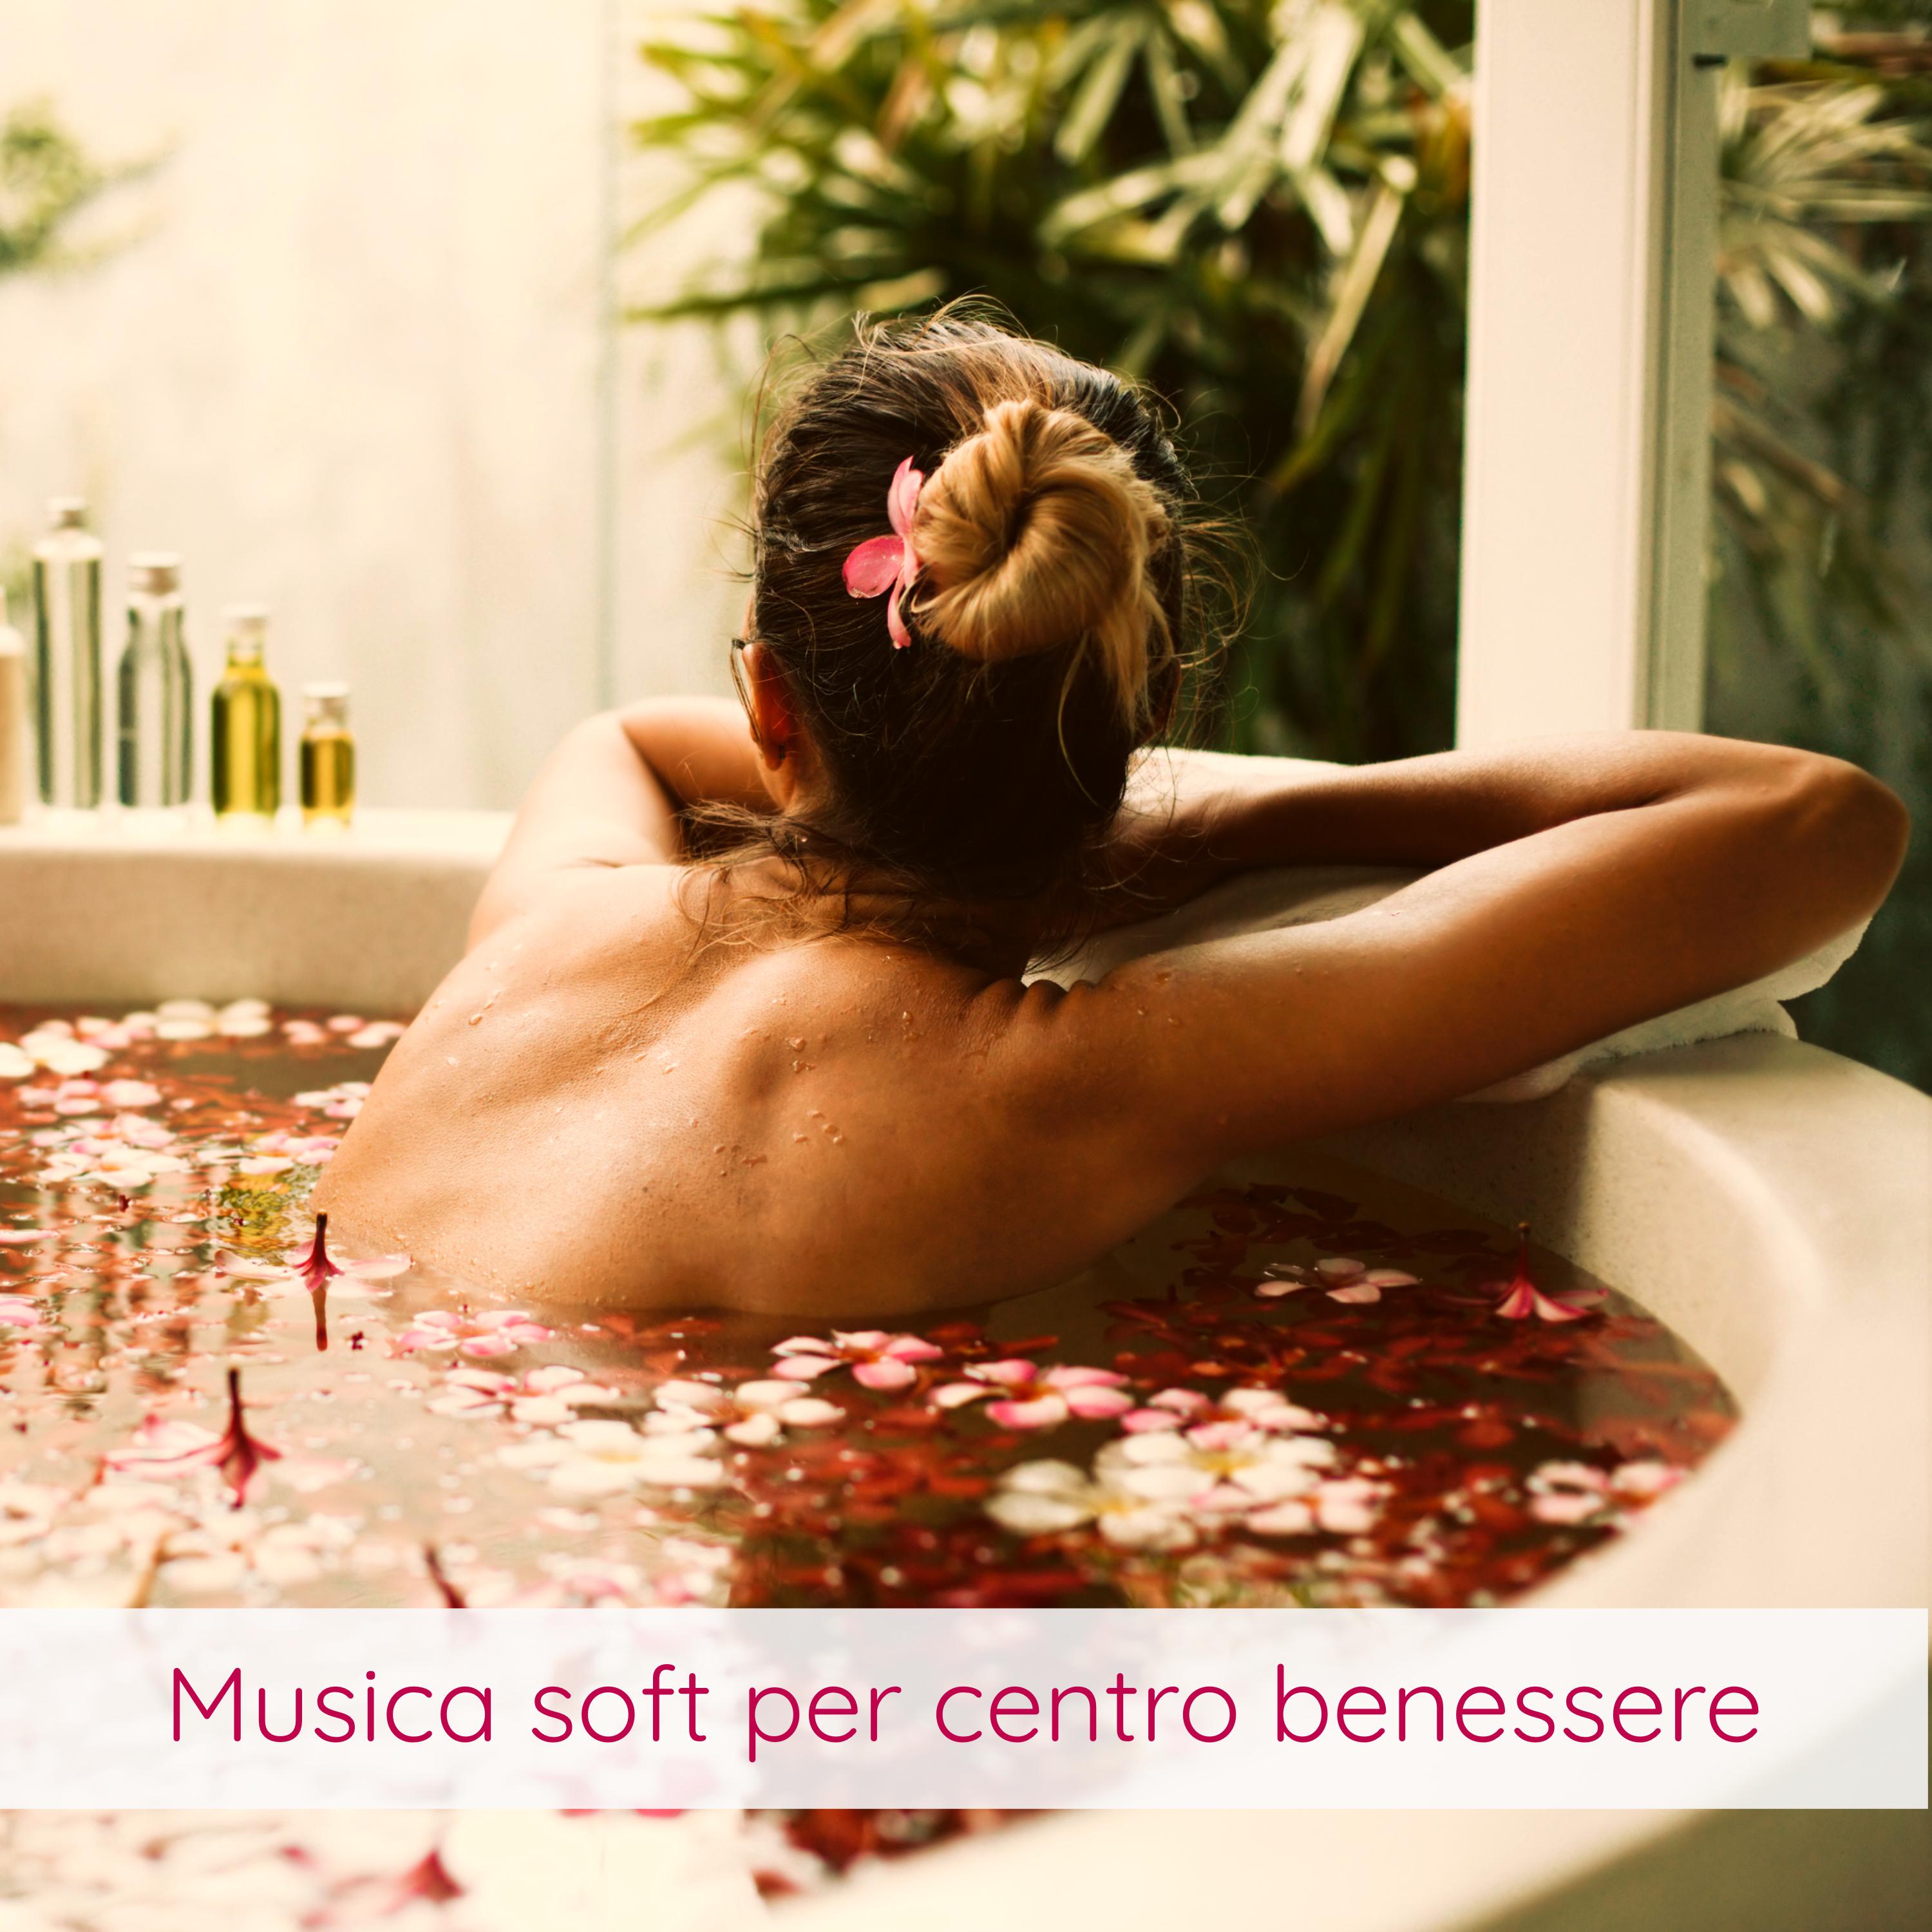 Musica soft per centro benessere  Sottofondo musicale ideale per massaggio, spa, sauna e trattamento ayurvedico